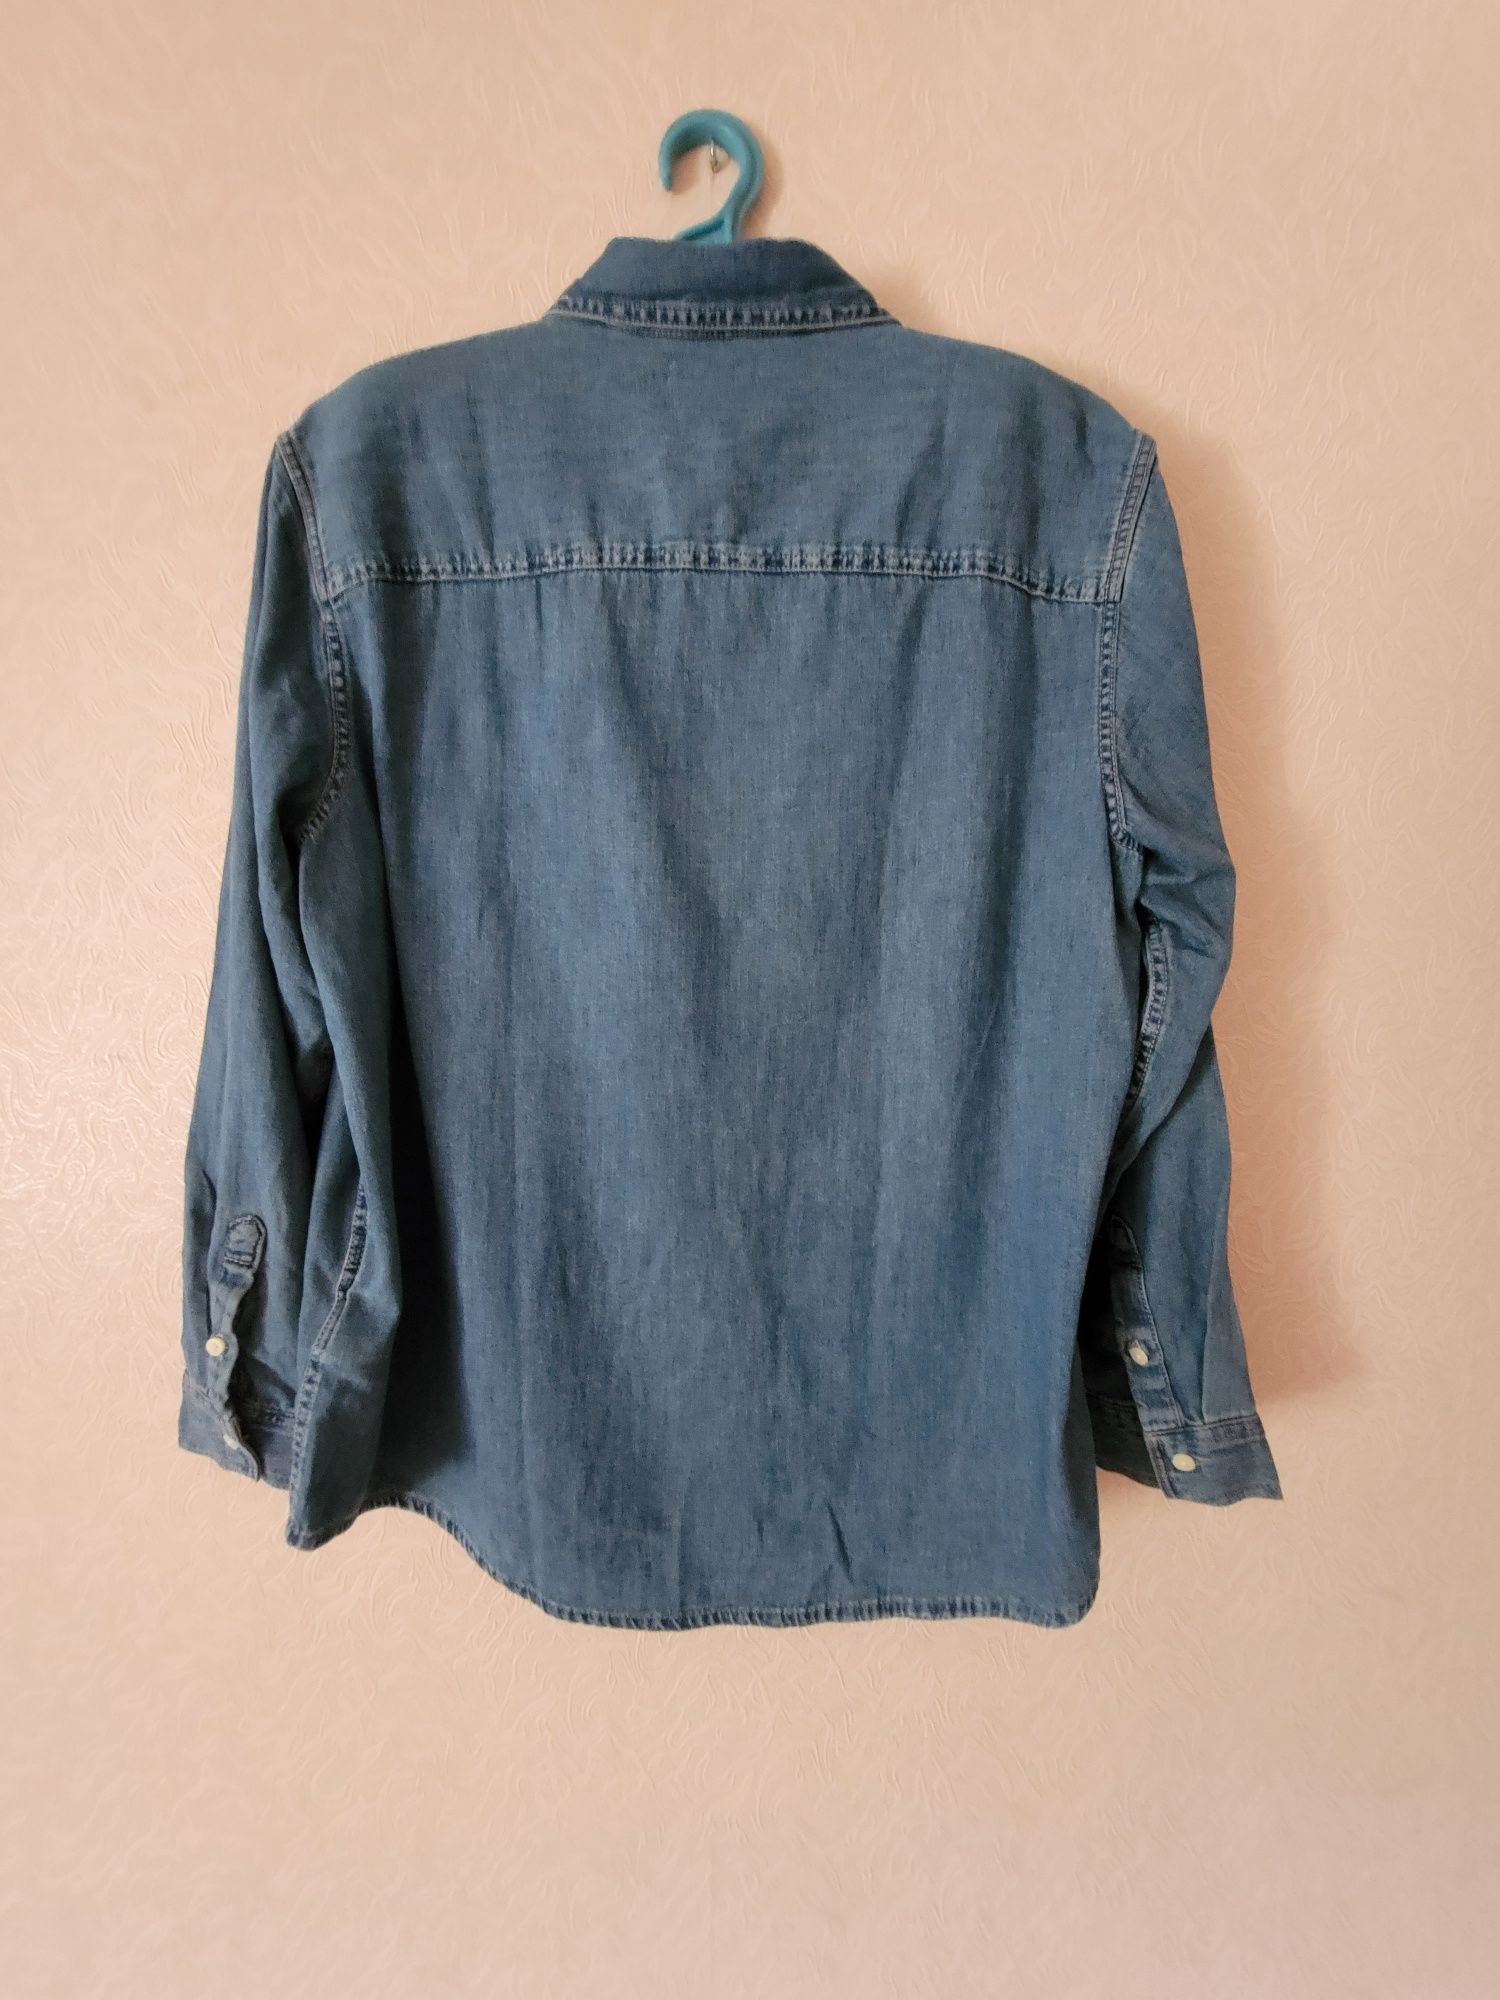 Мужская джинсовая рубашка calvin klein, размер L